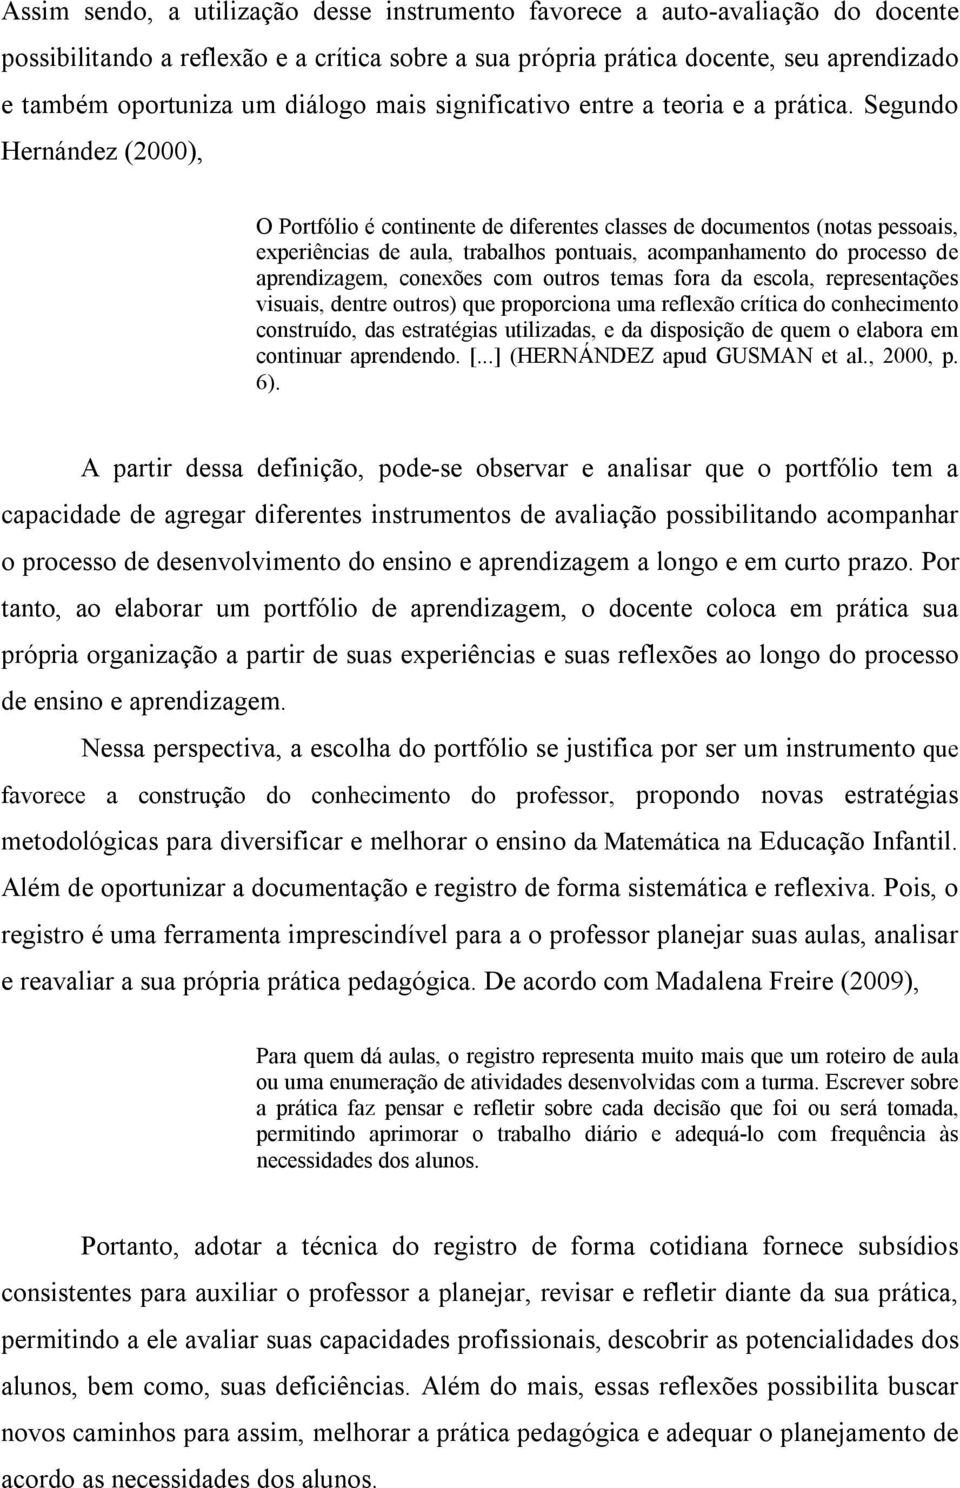 Segundo Hernández (2000), O Portfólio é continente de diferentes classes de documentos (notas pessoais, experiências de aula, trabalhos pontuais, acompanhamento do processo de aprendizagem, conexões